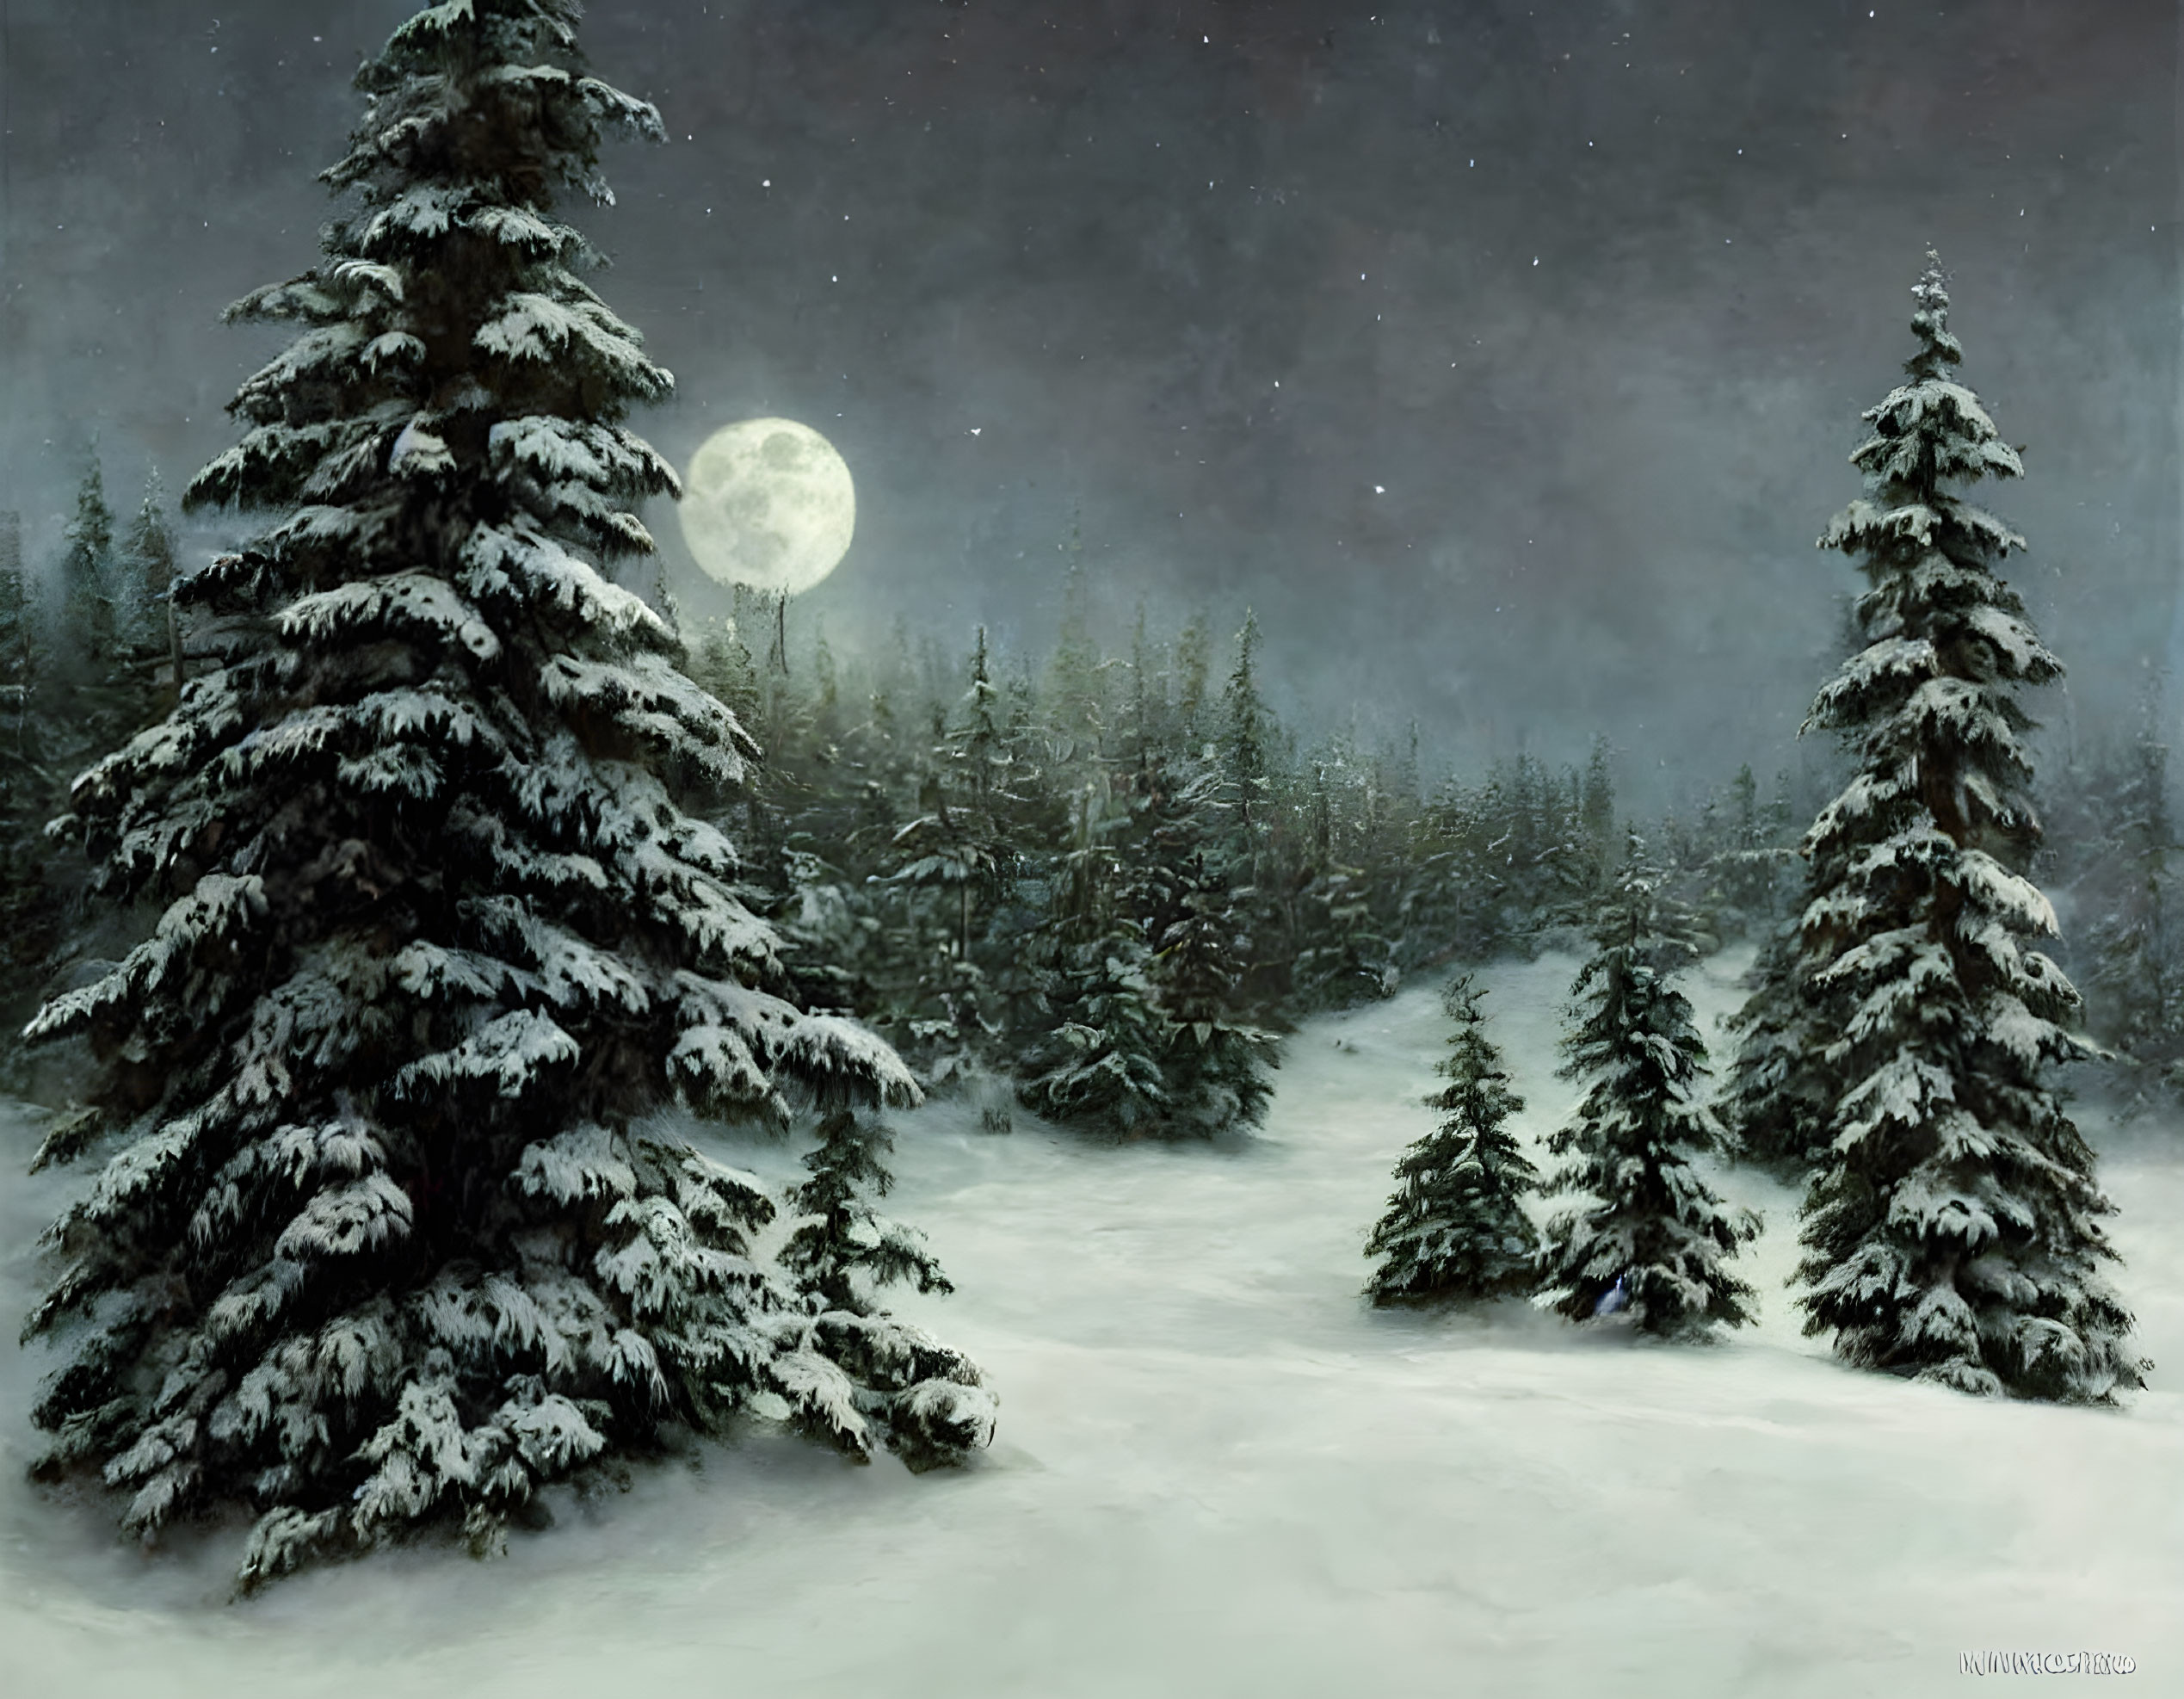 Winter night in the moonlight